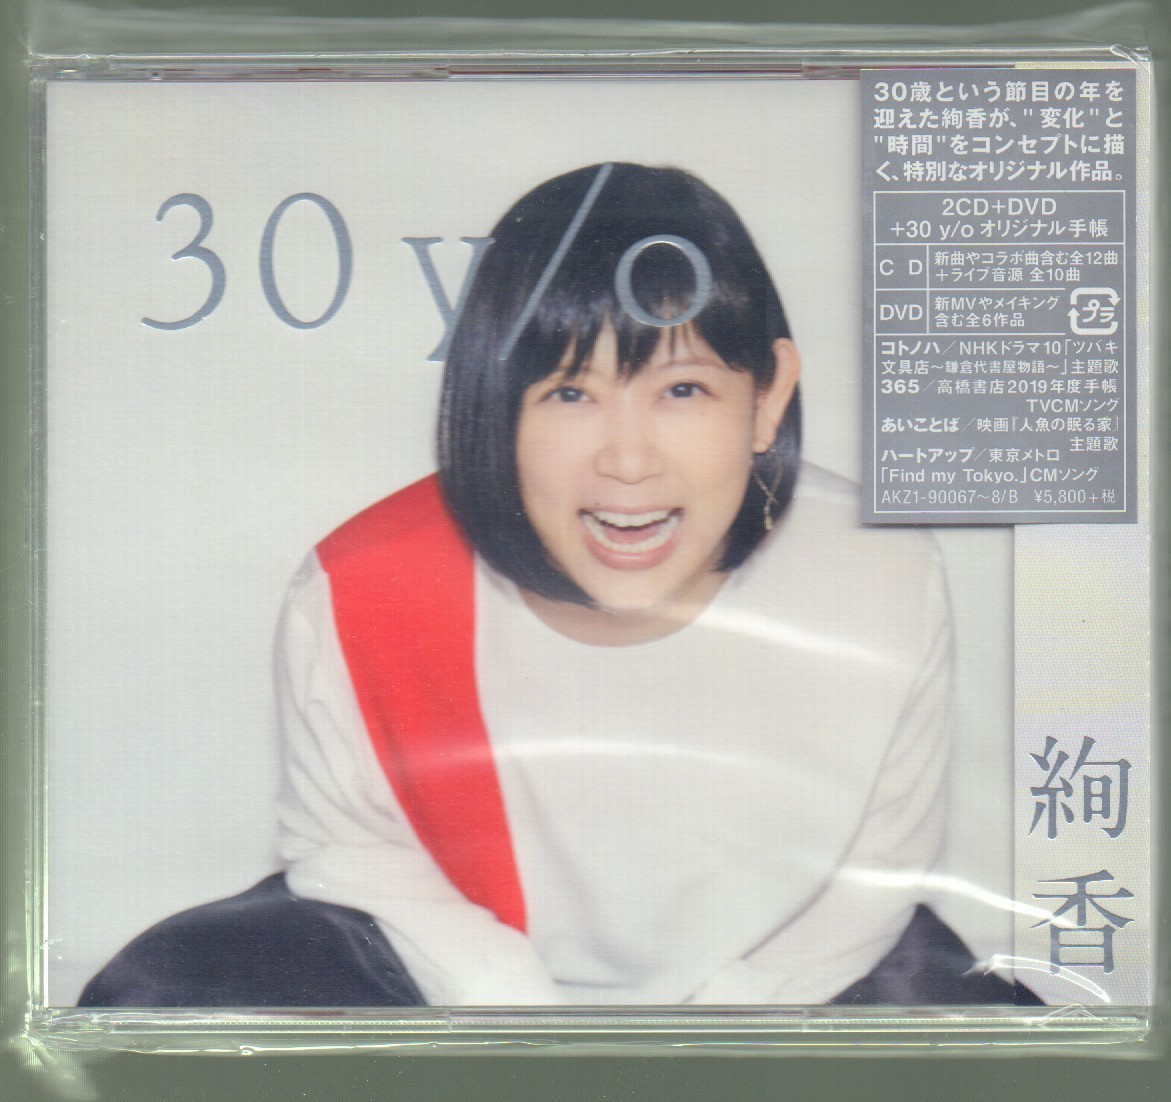 絢香 FC盤 ファンクラブ限定盤 30 y/o 2CD+DVD CD…新曲/コラボ曲 